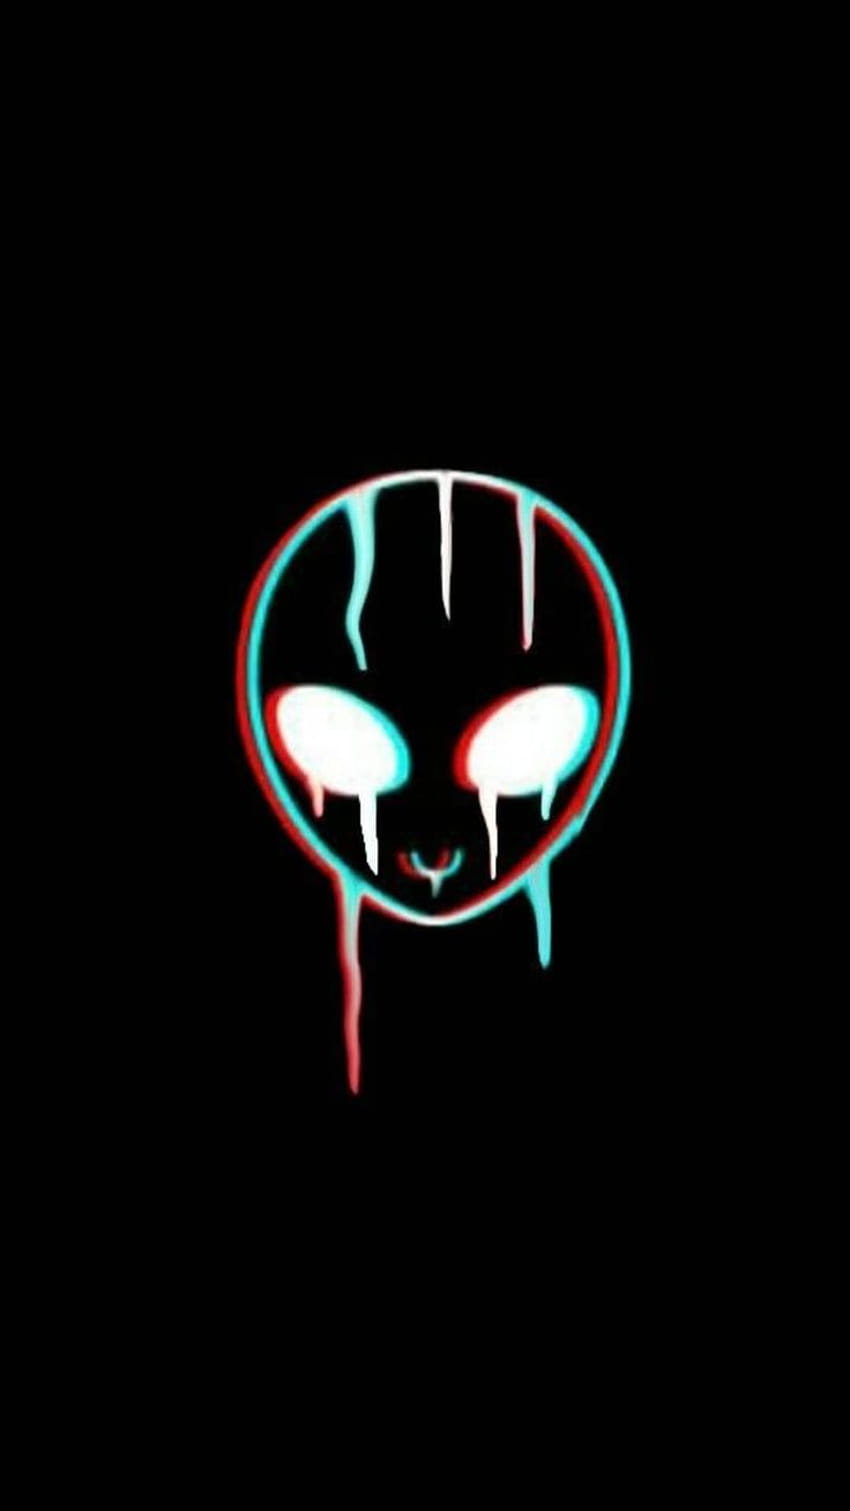 SBM Alien, alien emoji HD phone wallpaper